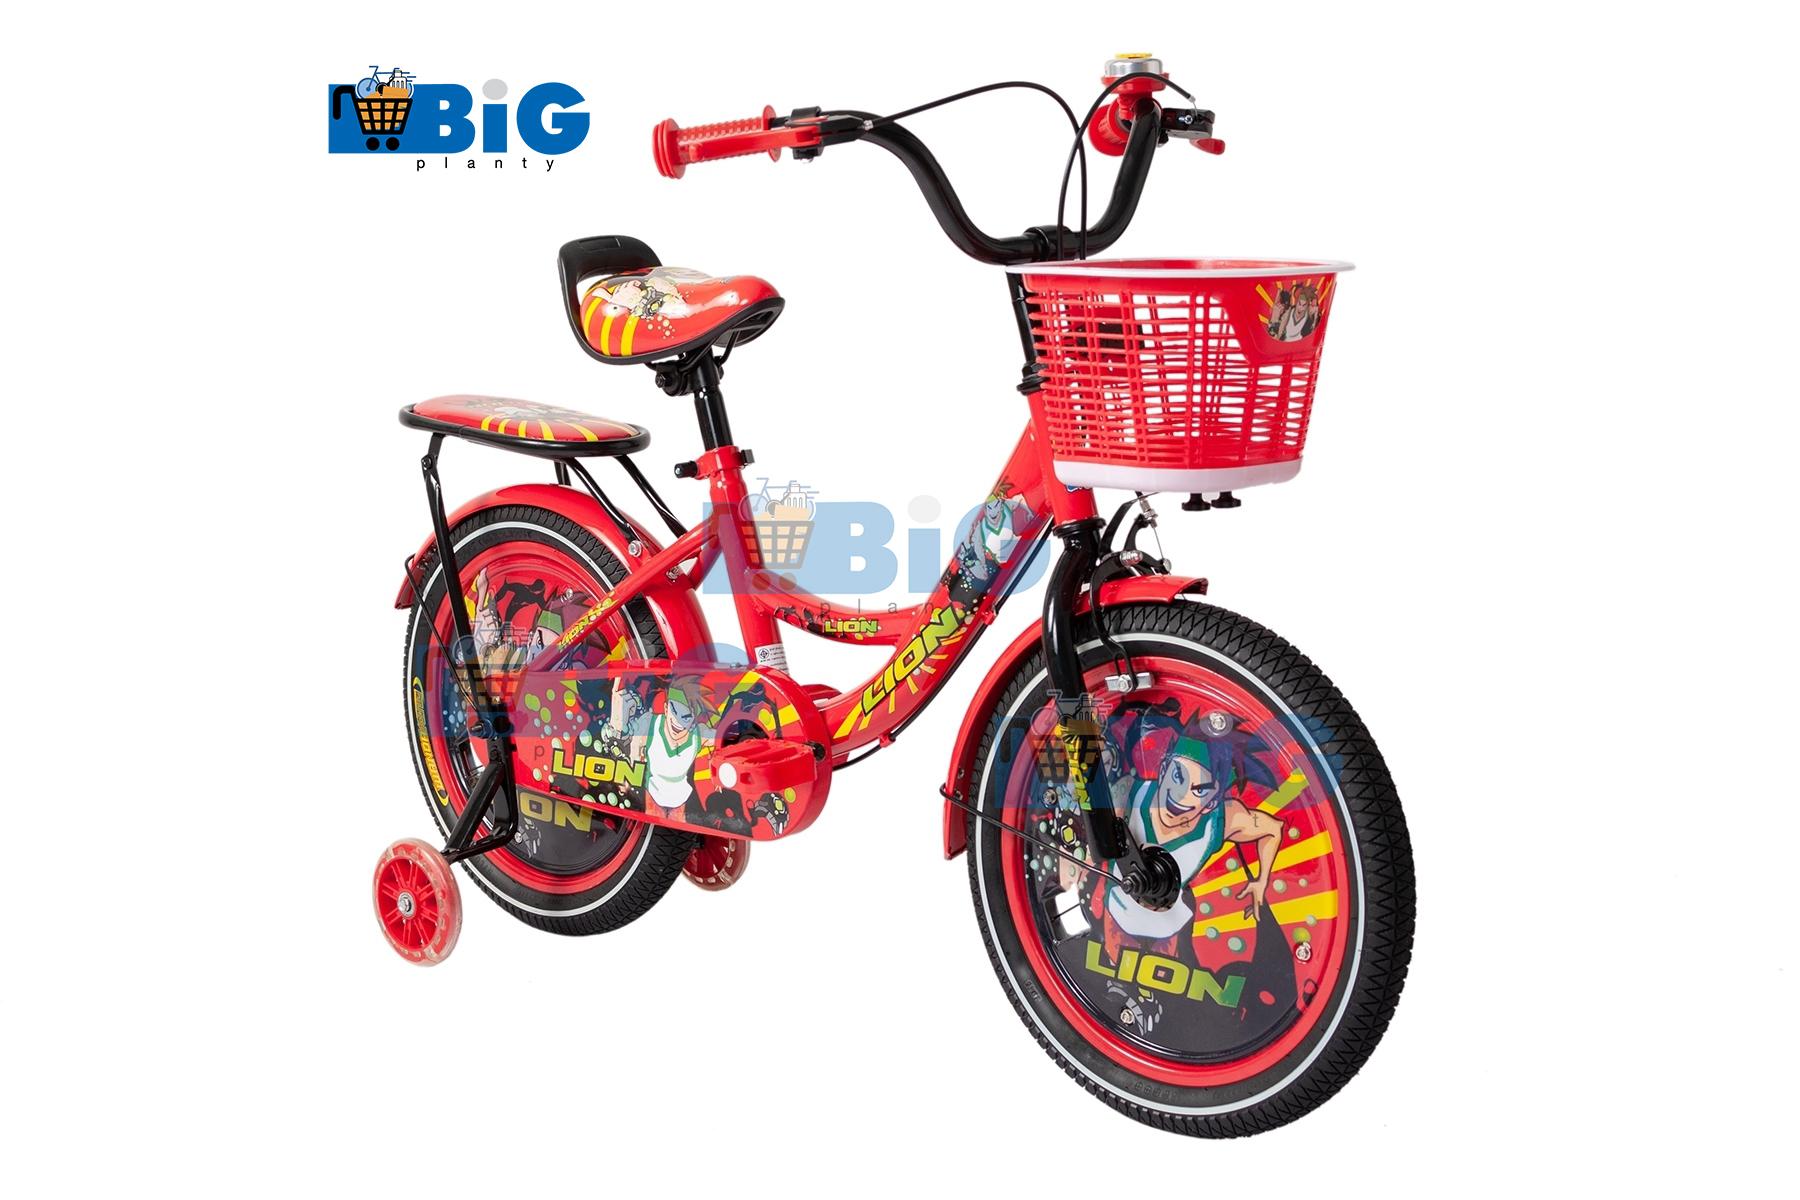 BigPlantyจักรยานเด็กเบนโทน 16 นิ้ว สีแดง No.7777